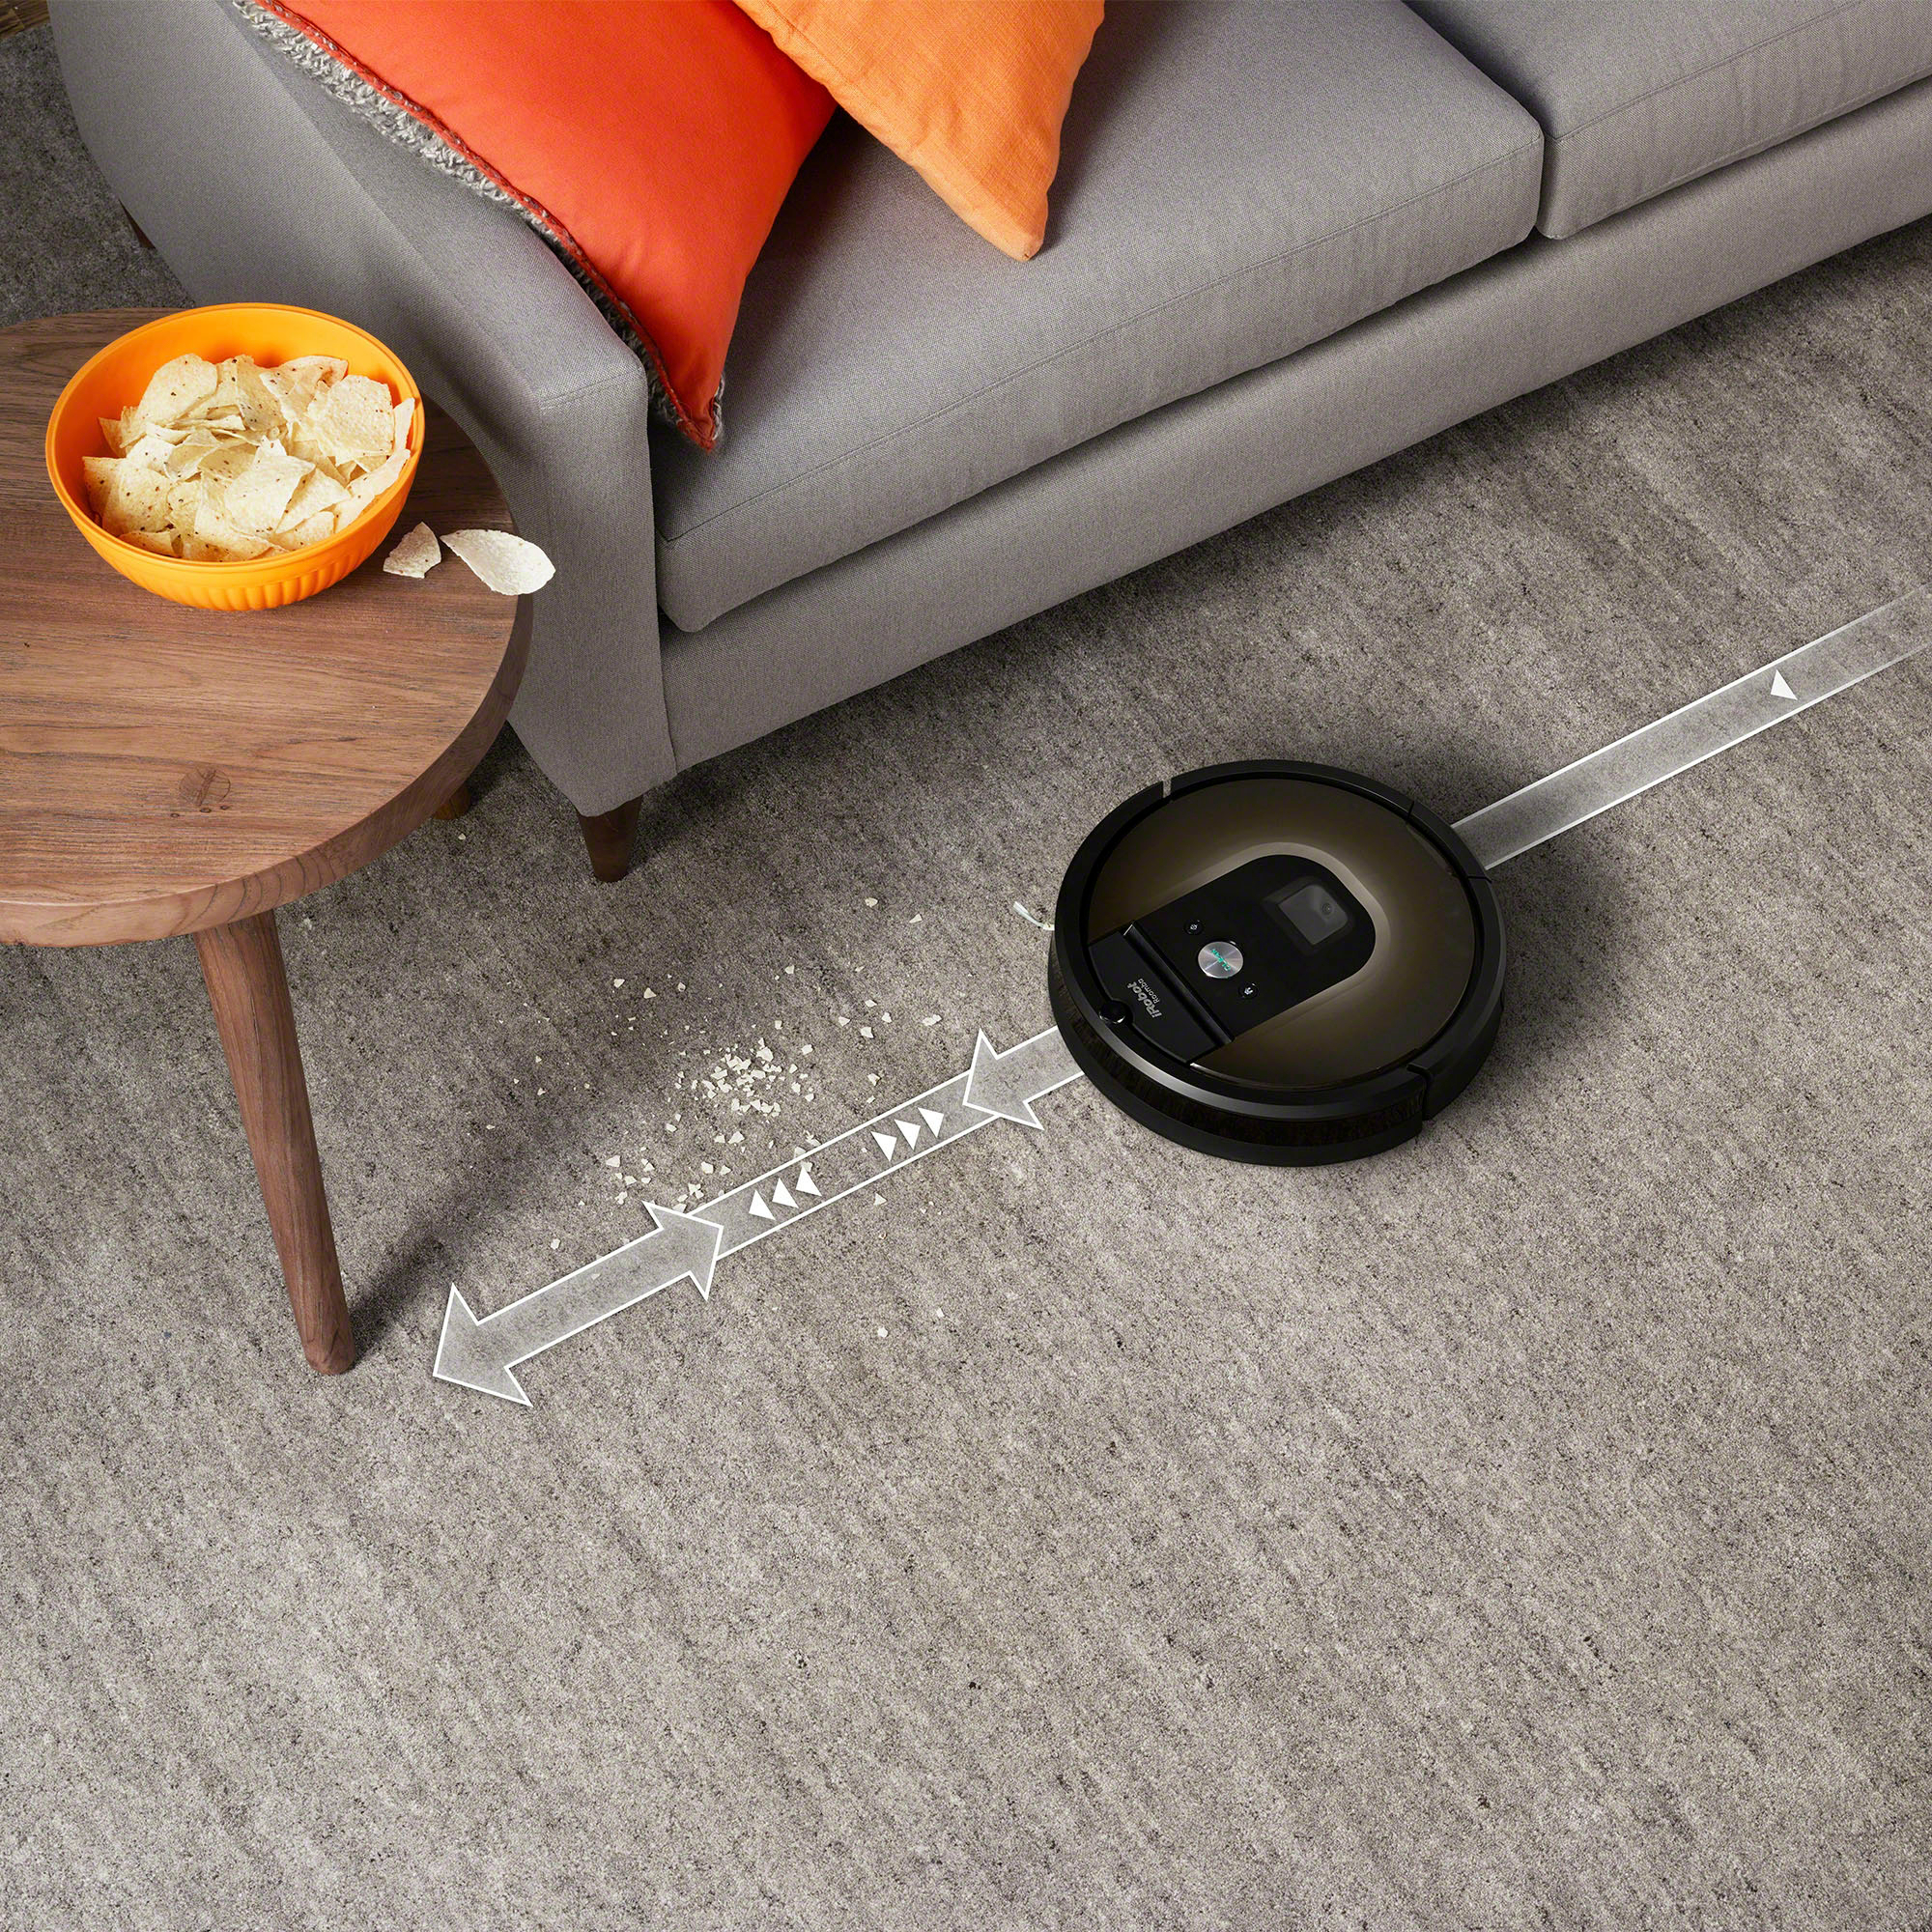 Best Buy: iRobot Roomba 981 Connected Robot Vacuum